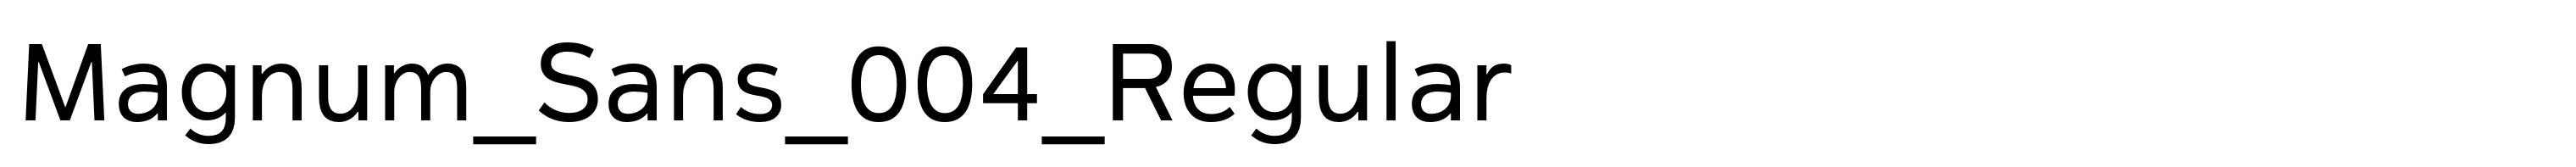 Magnum_Sans_004_Regular